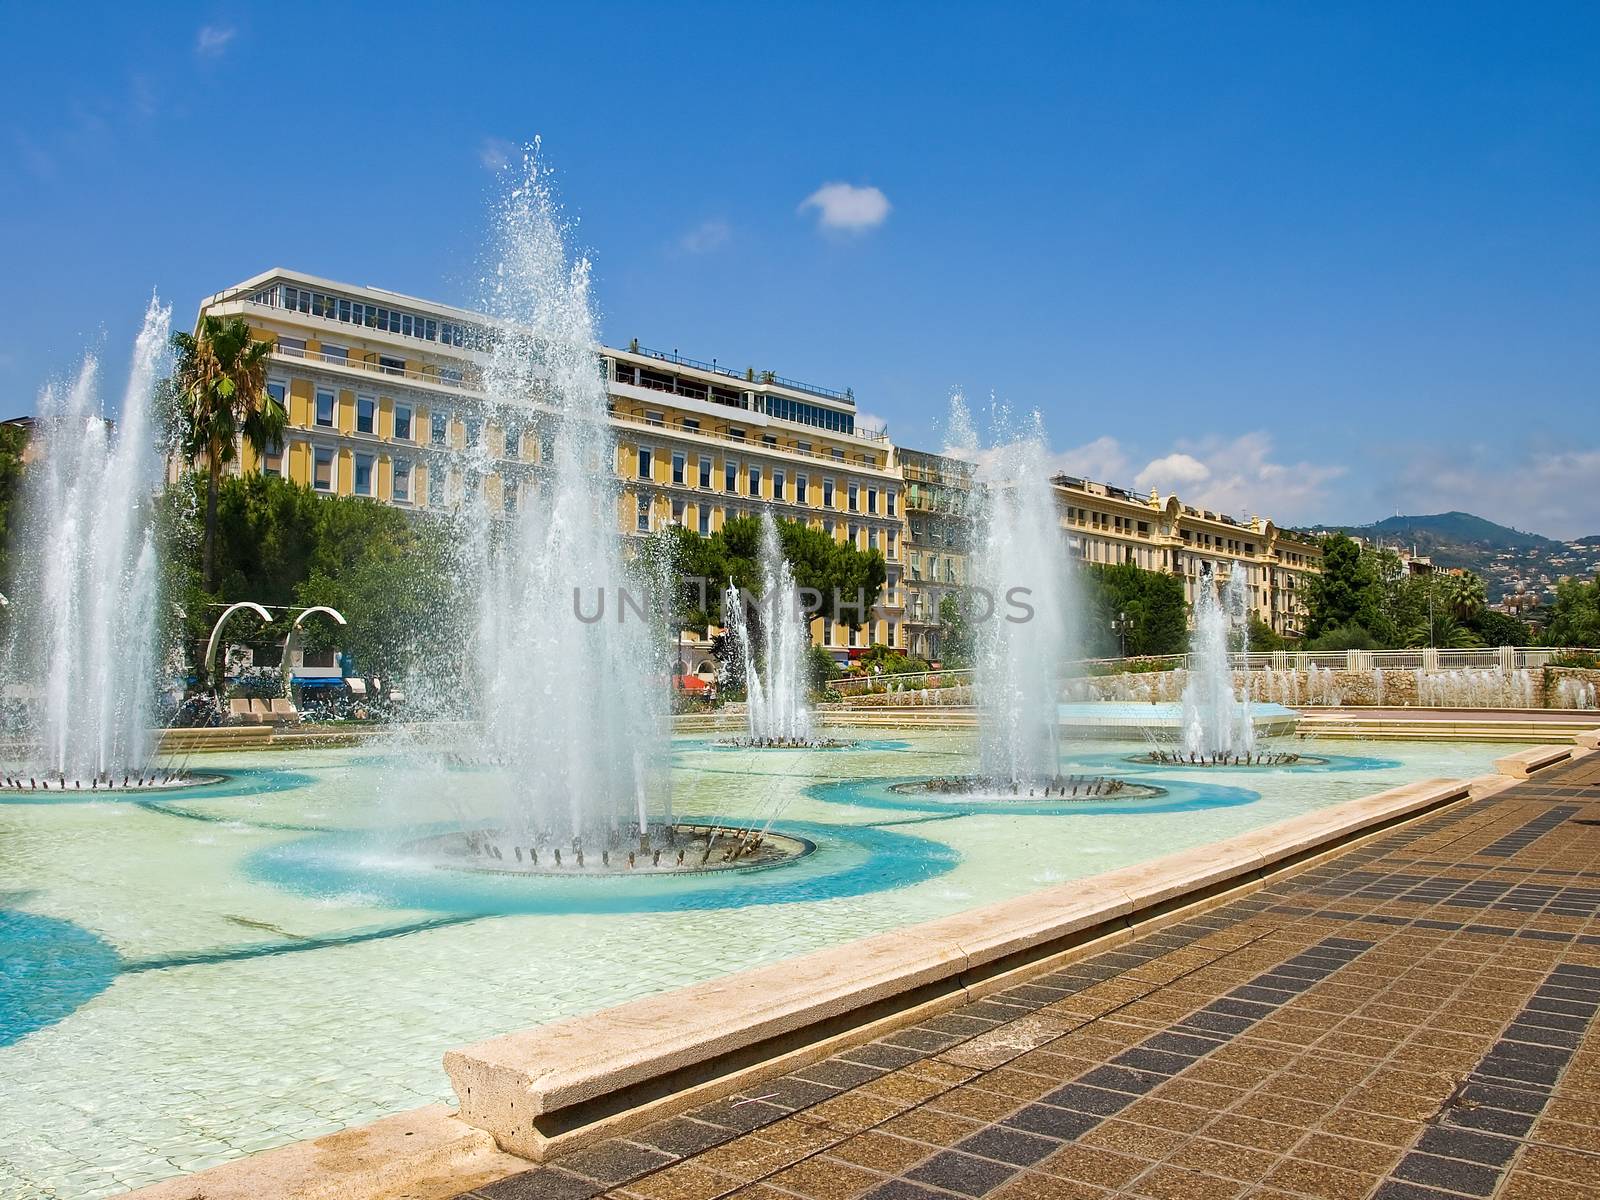 Plaza Massena Square by Venakr